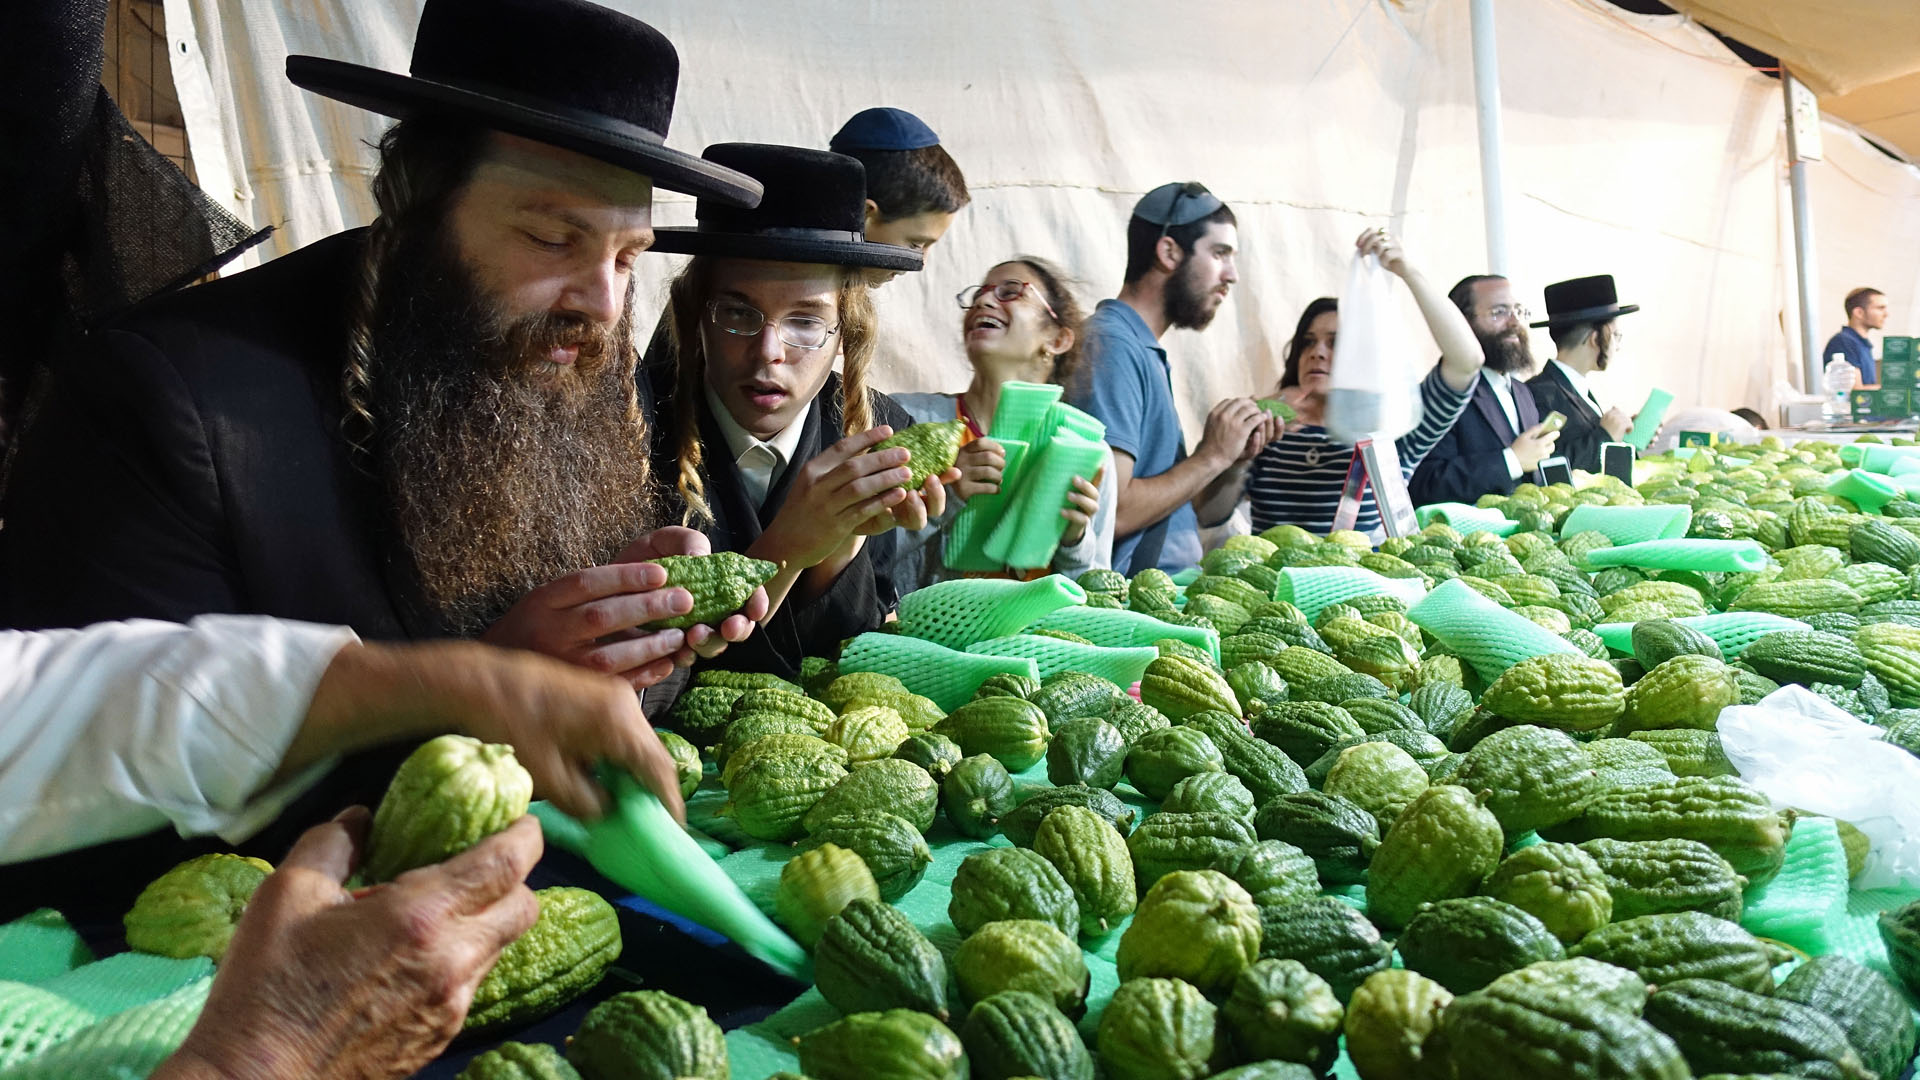 Ultra-orthodoxe Juden begutachten auf dem Markt Etrog-Früchte